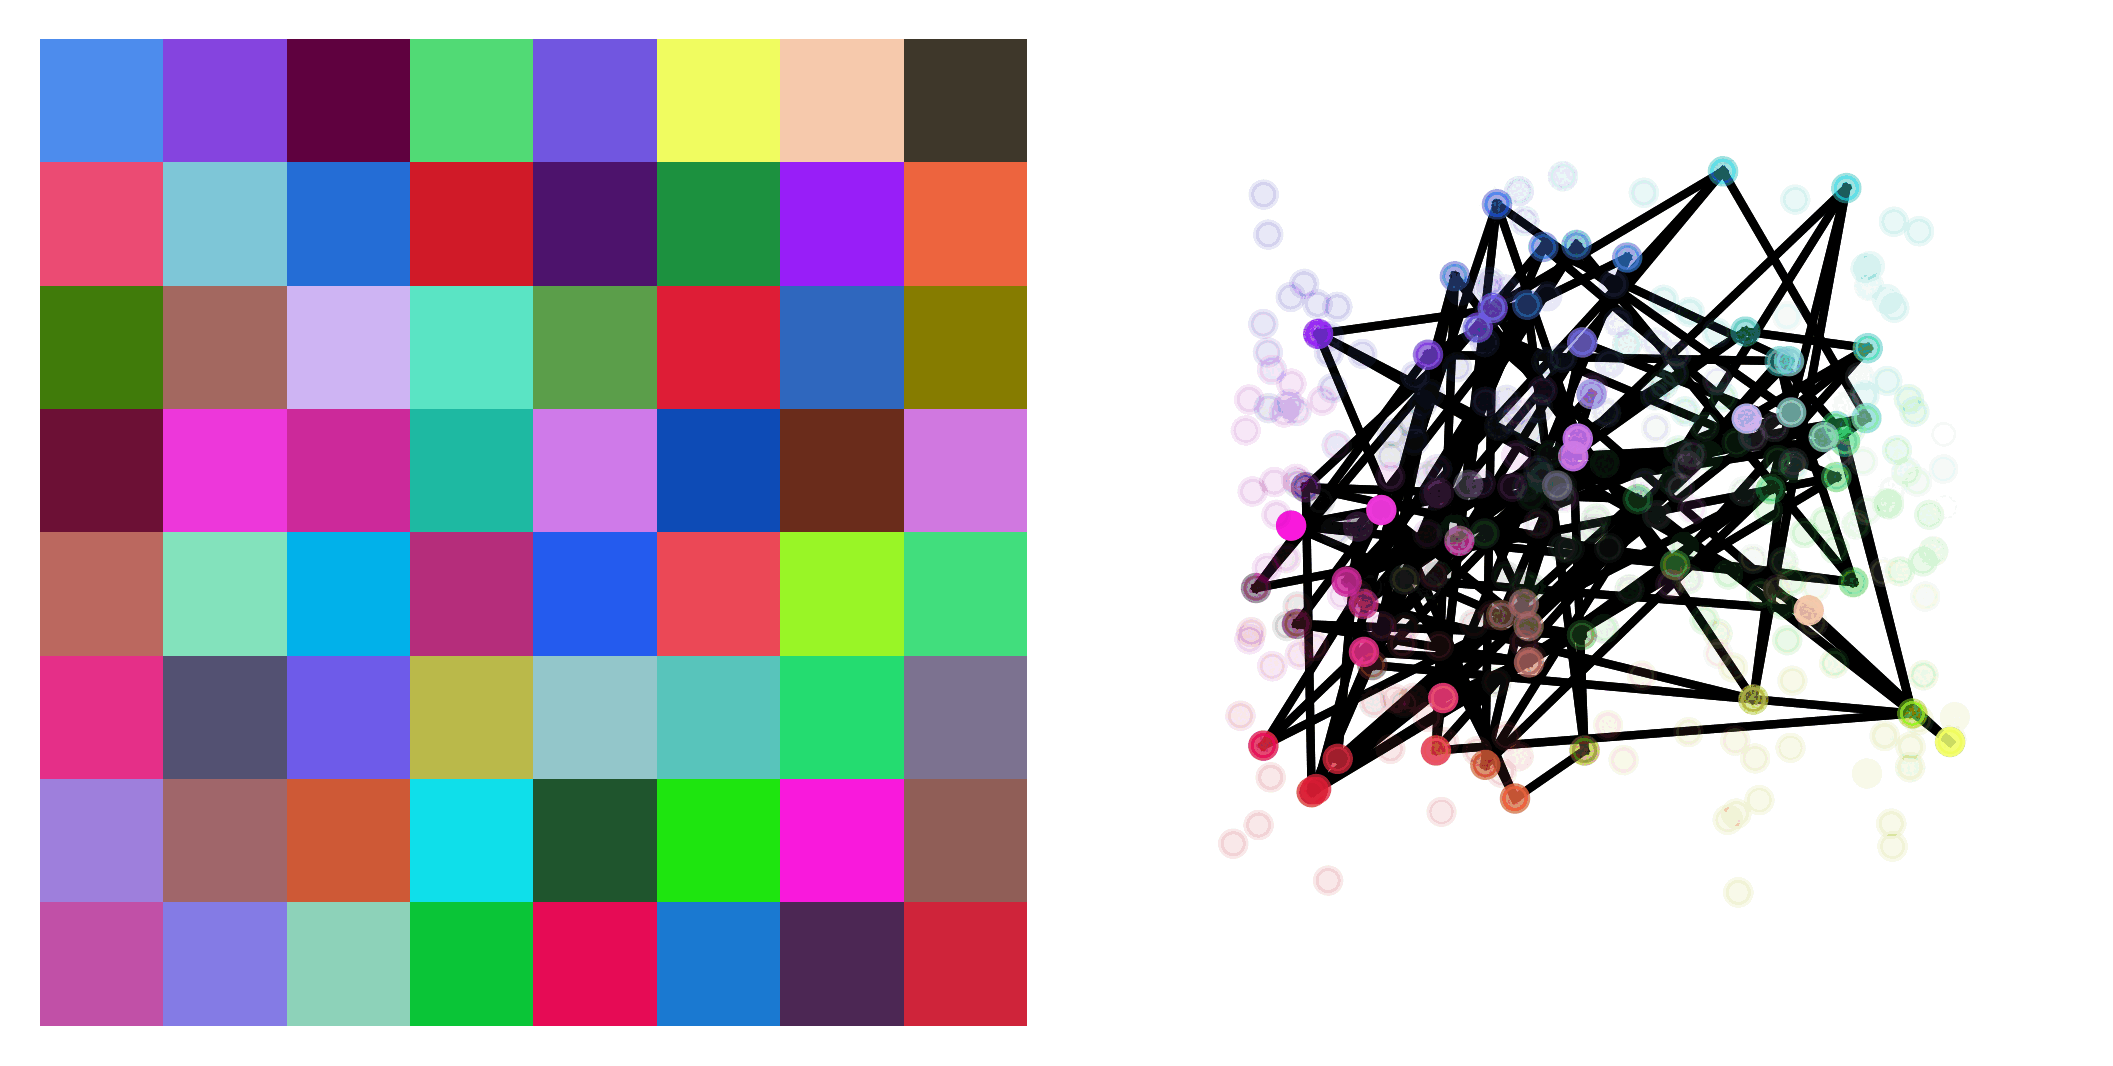 uniform_colors_2d_8x8_p0x0_fit_animation.gif